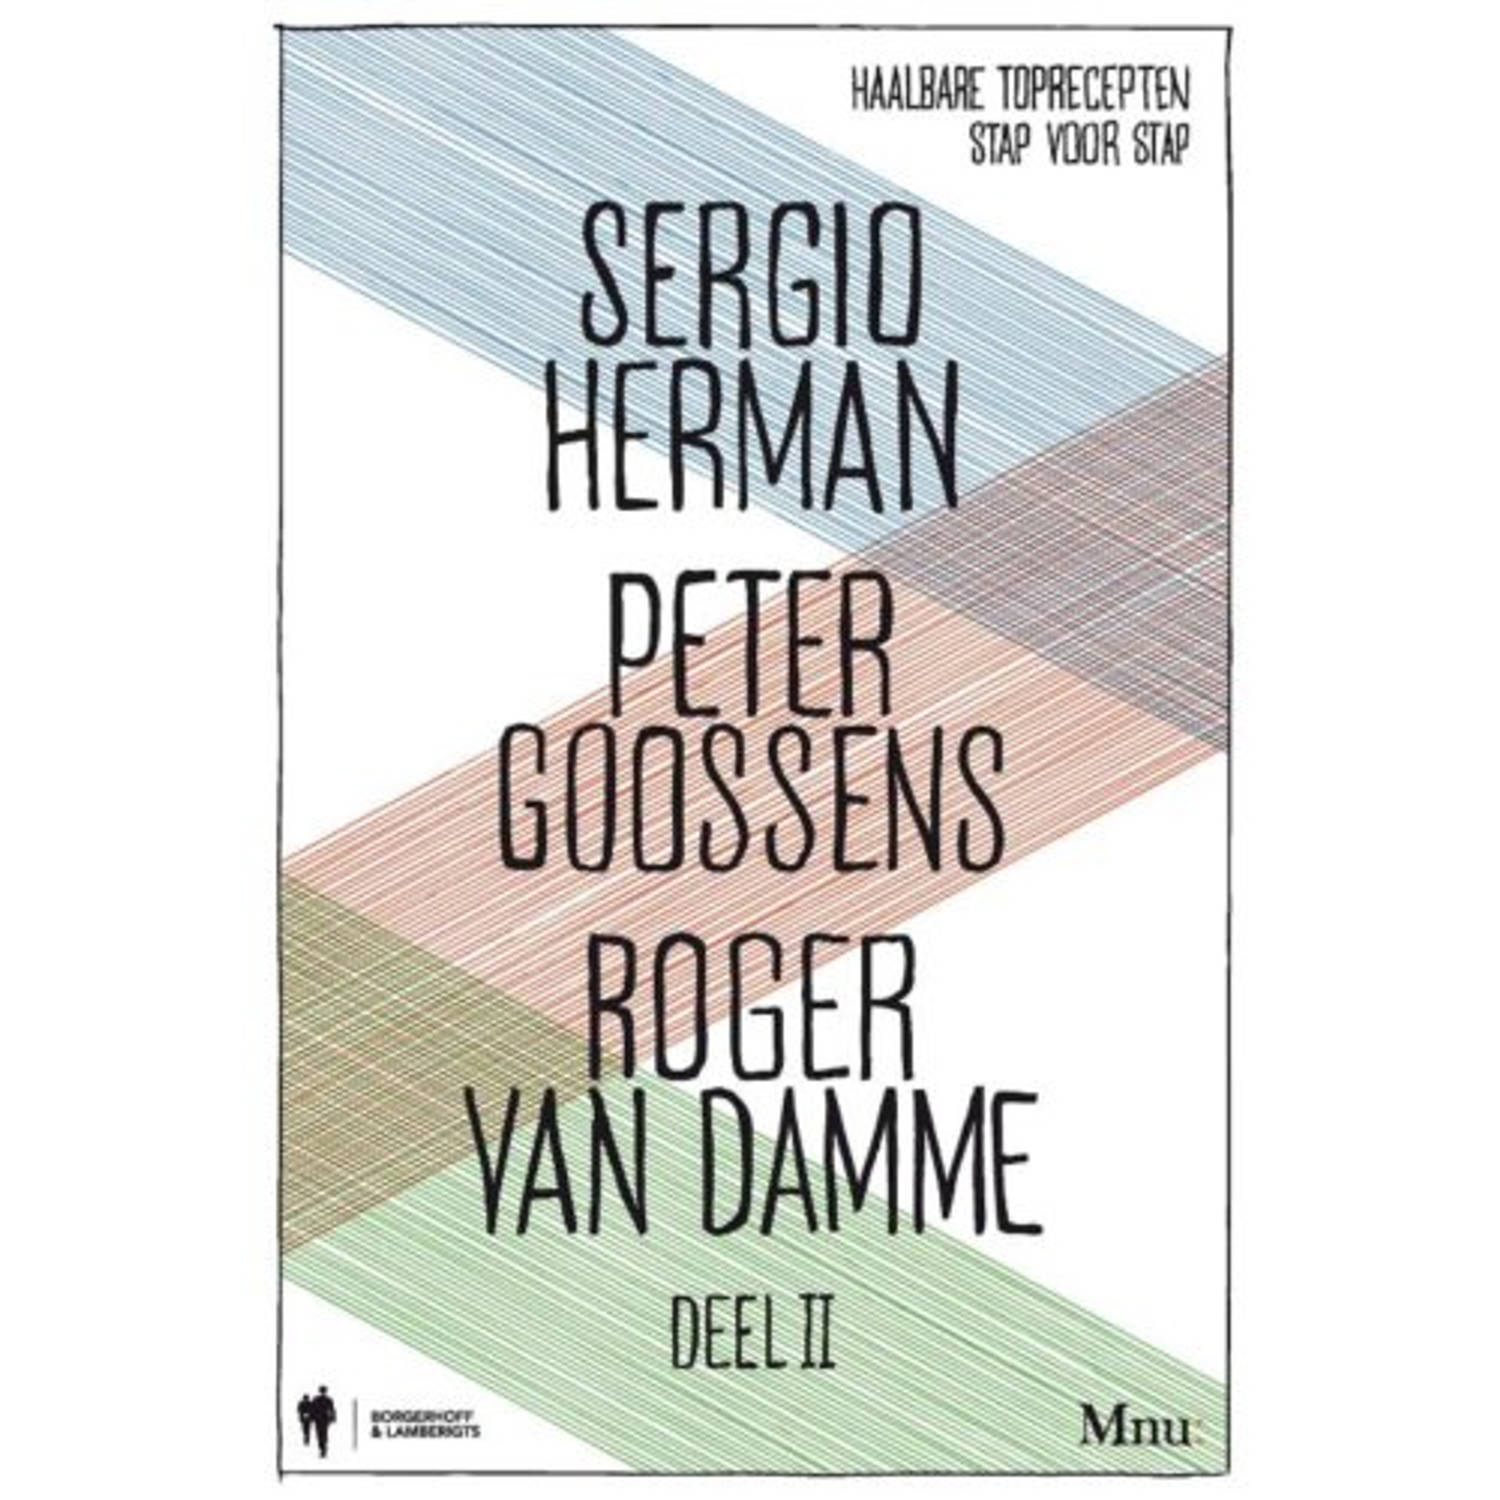 Sergio Herman, Peter Goossens & Roger Van Damme /